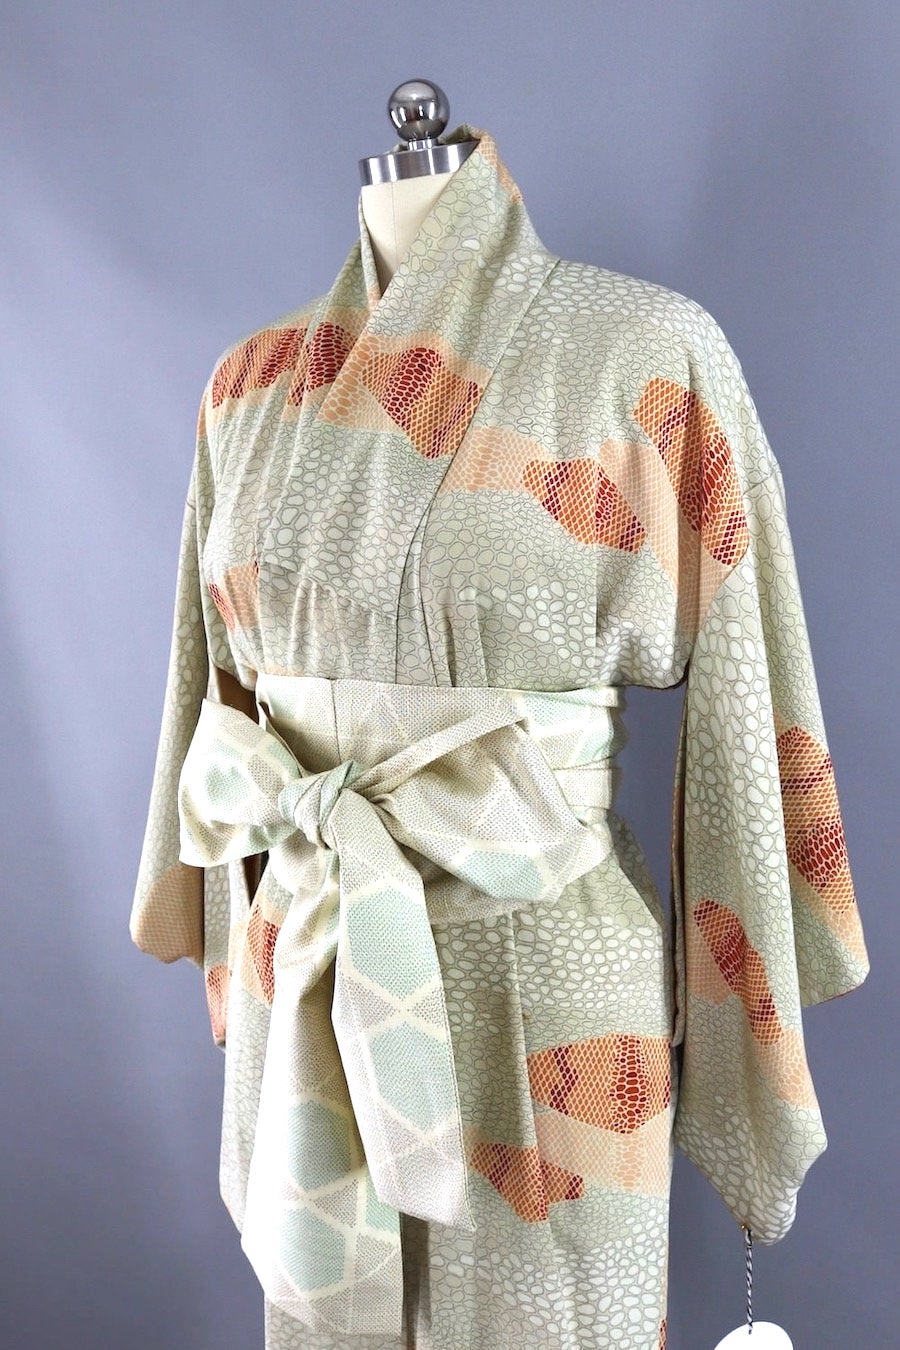 Vintage Silk Kimono Robe / Orange Ivory Dots-ThisBlueBird